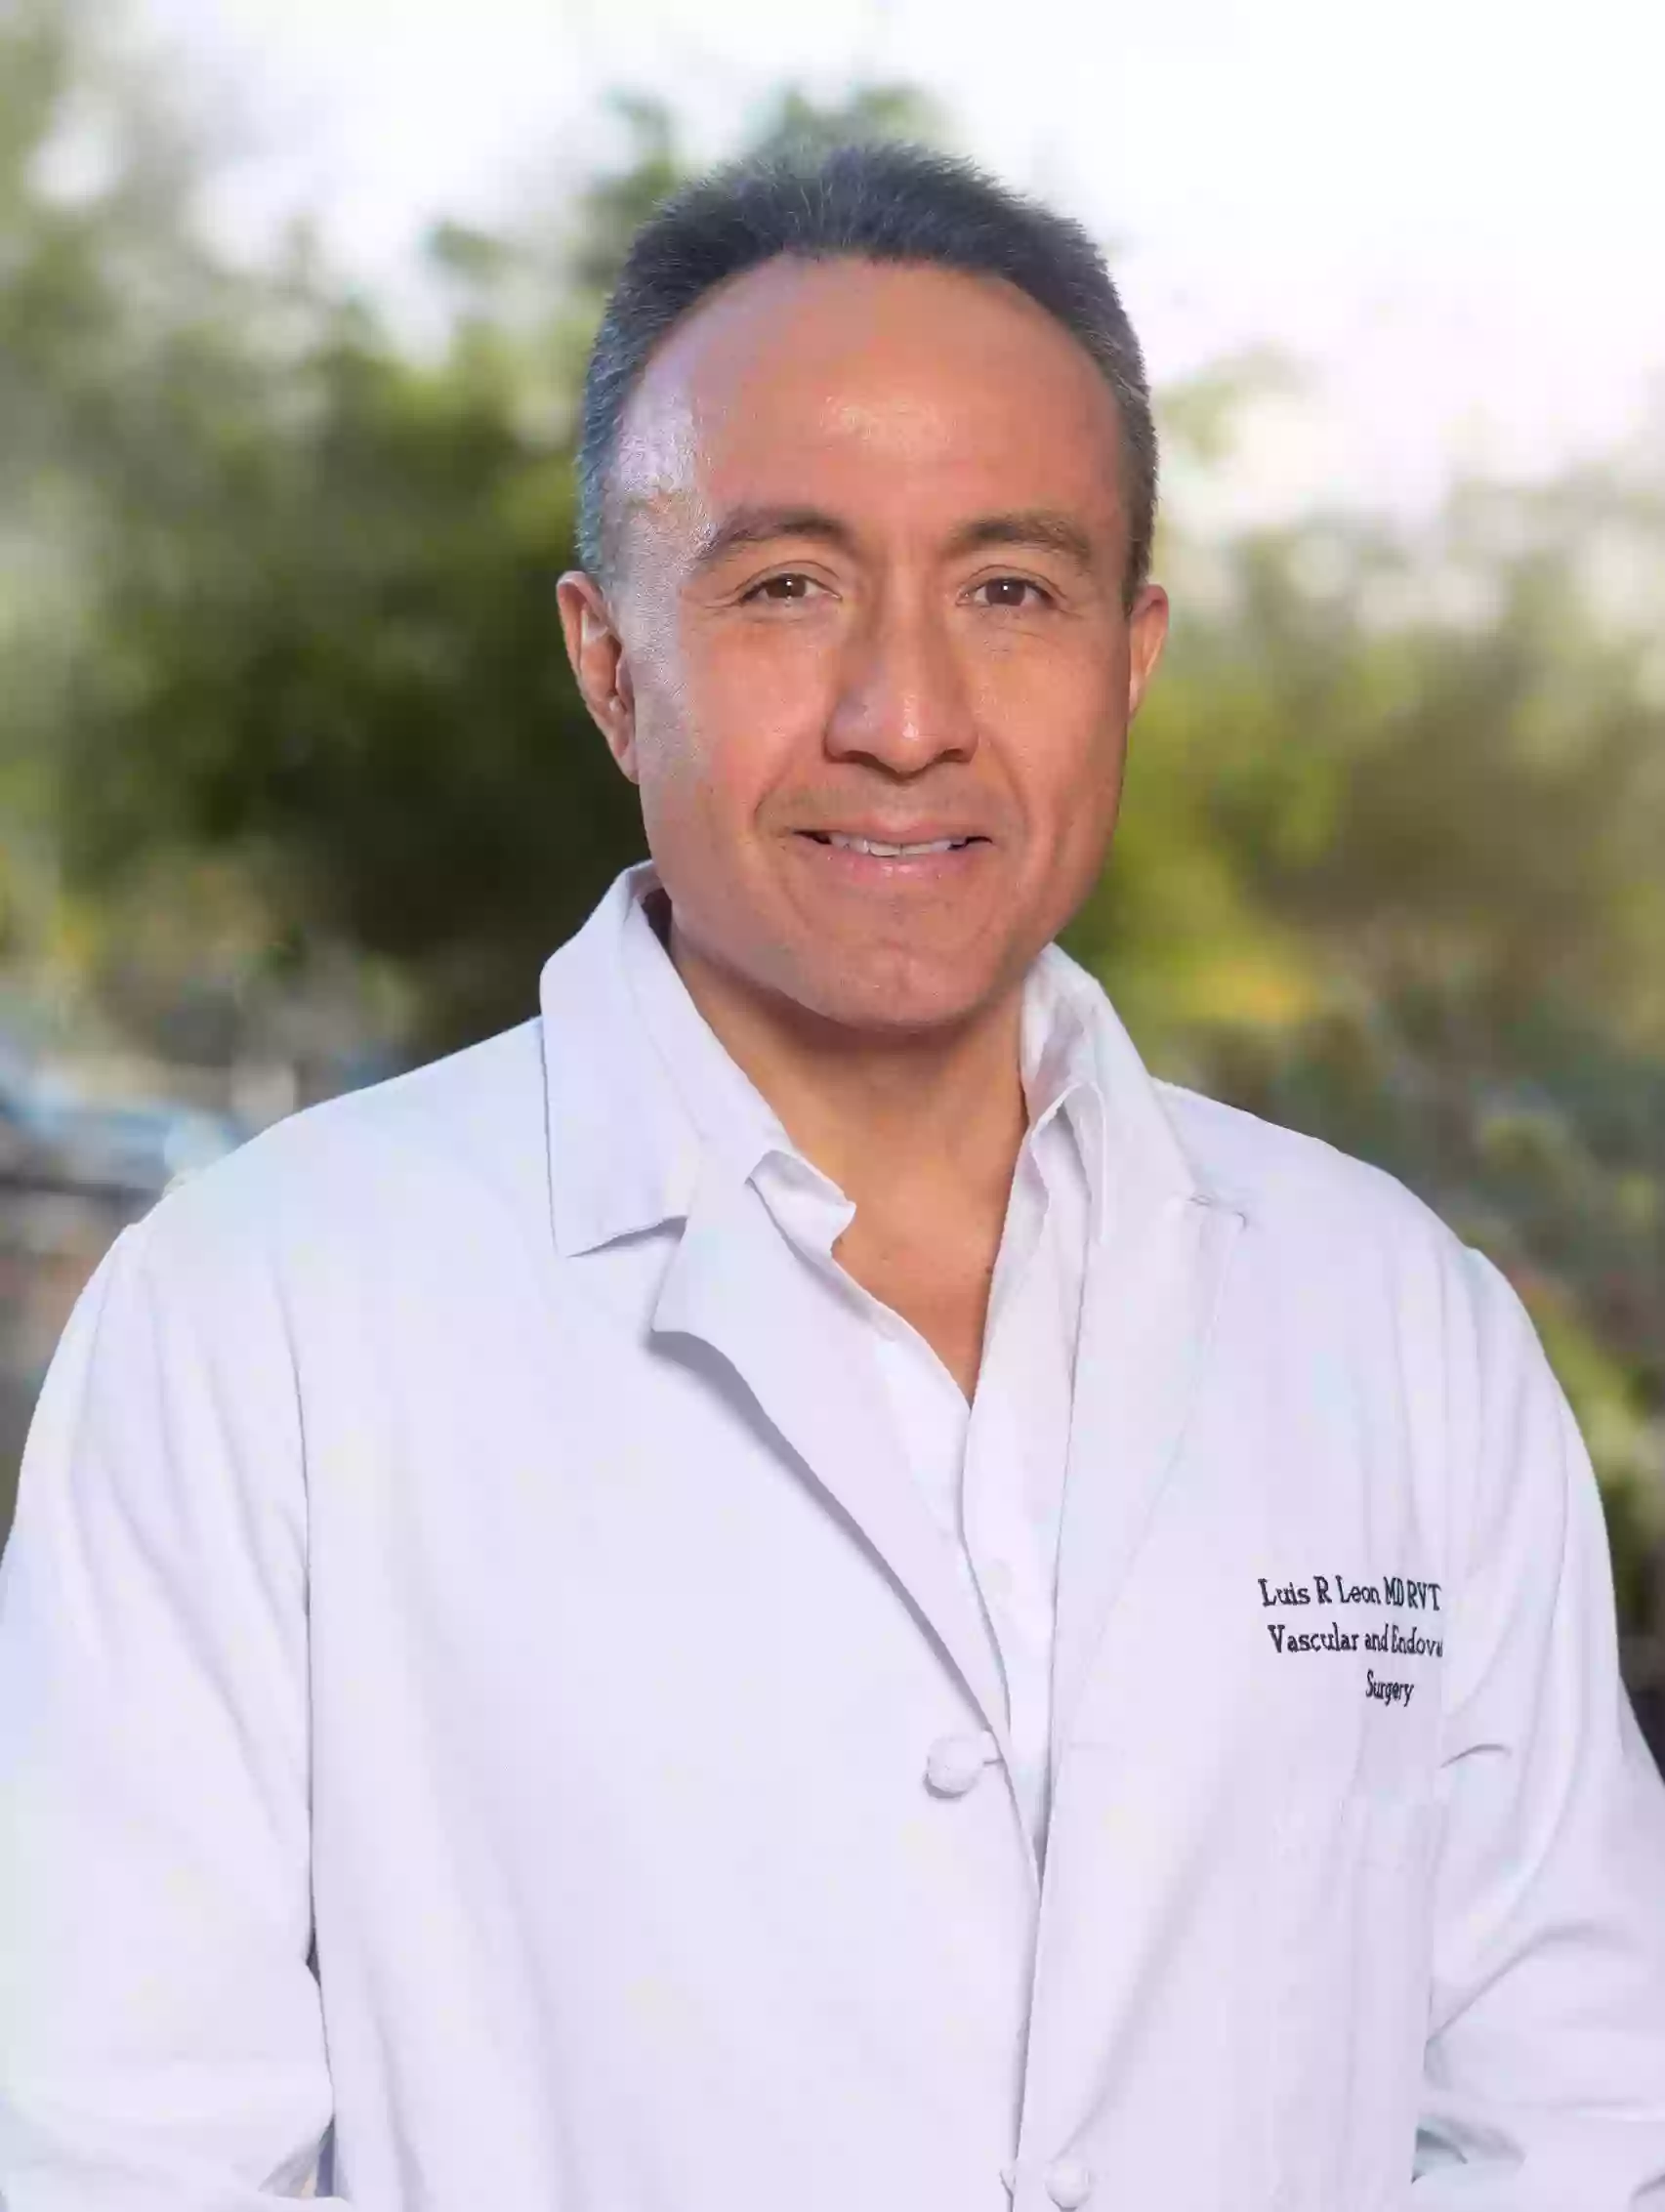 Dr. Luis Leon